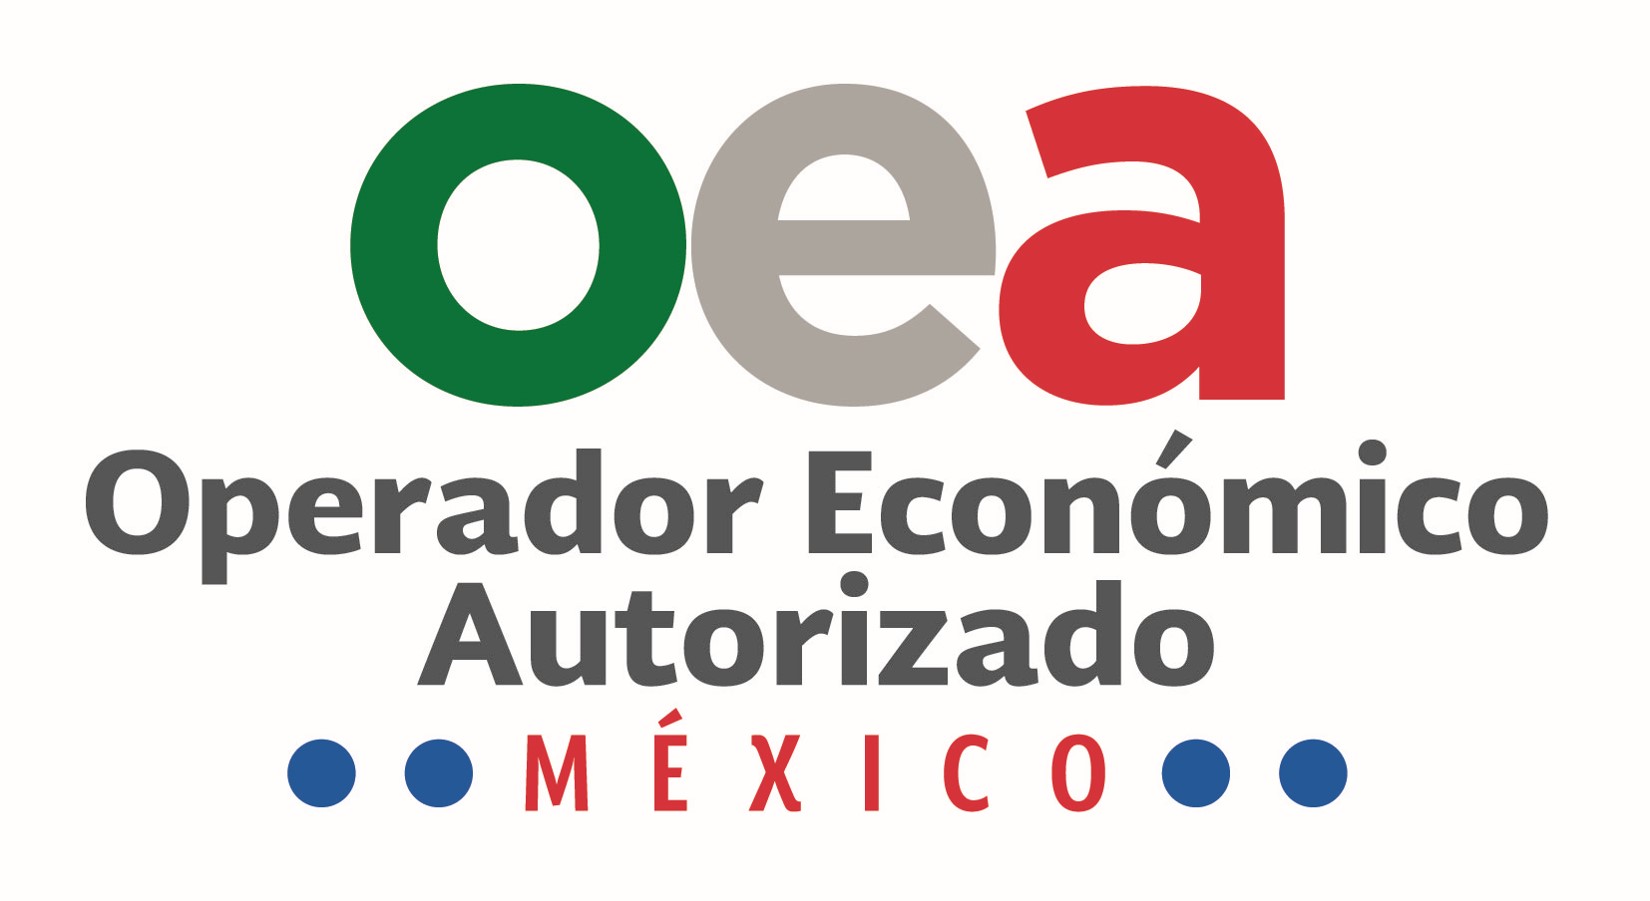 Operador Económico Autorizado en México